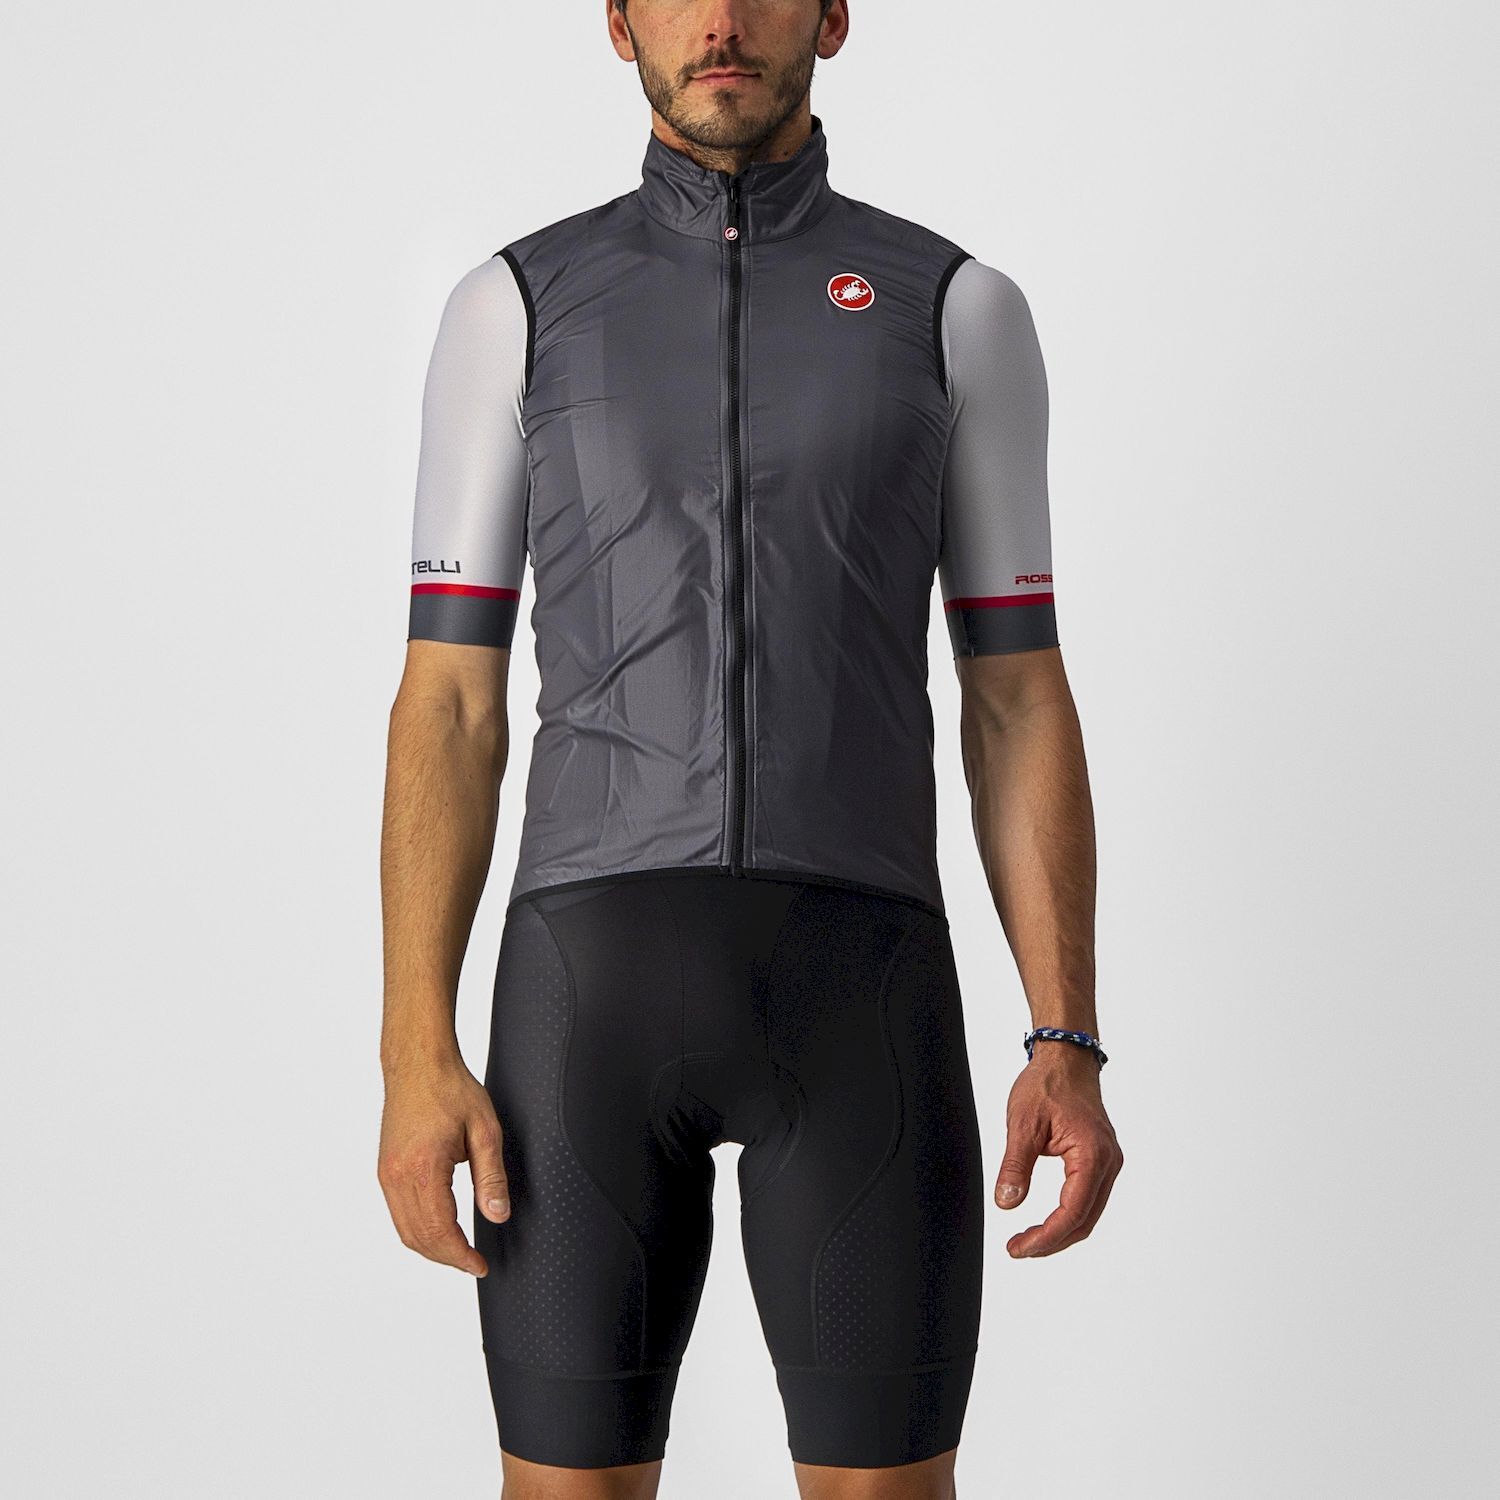 Castelli Aria Vest - Cycling vest - Men's